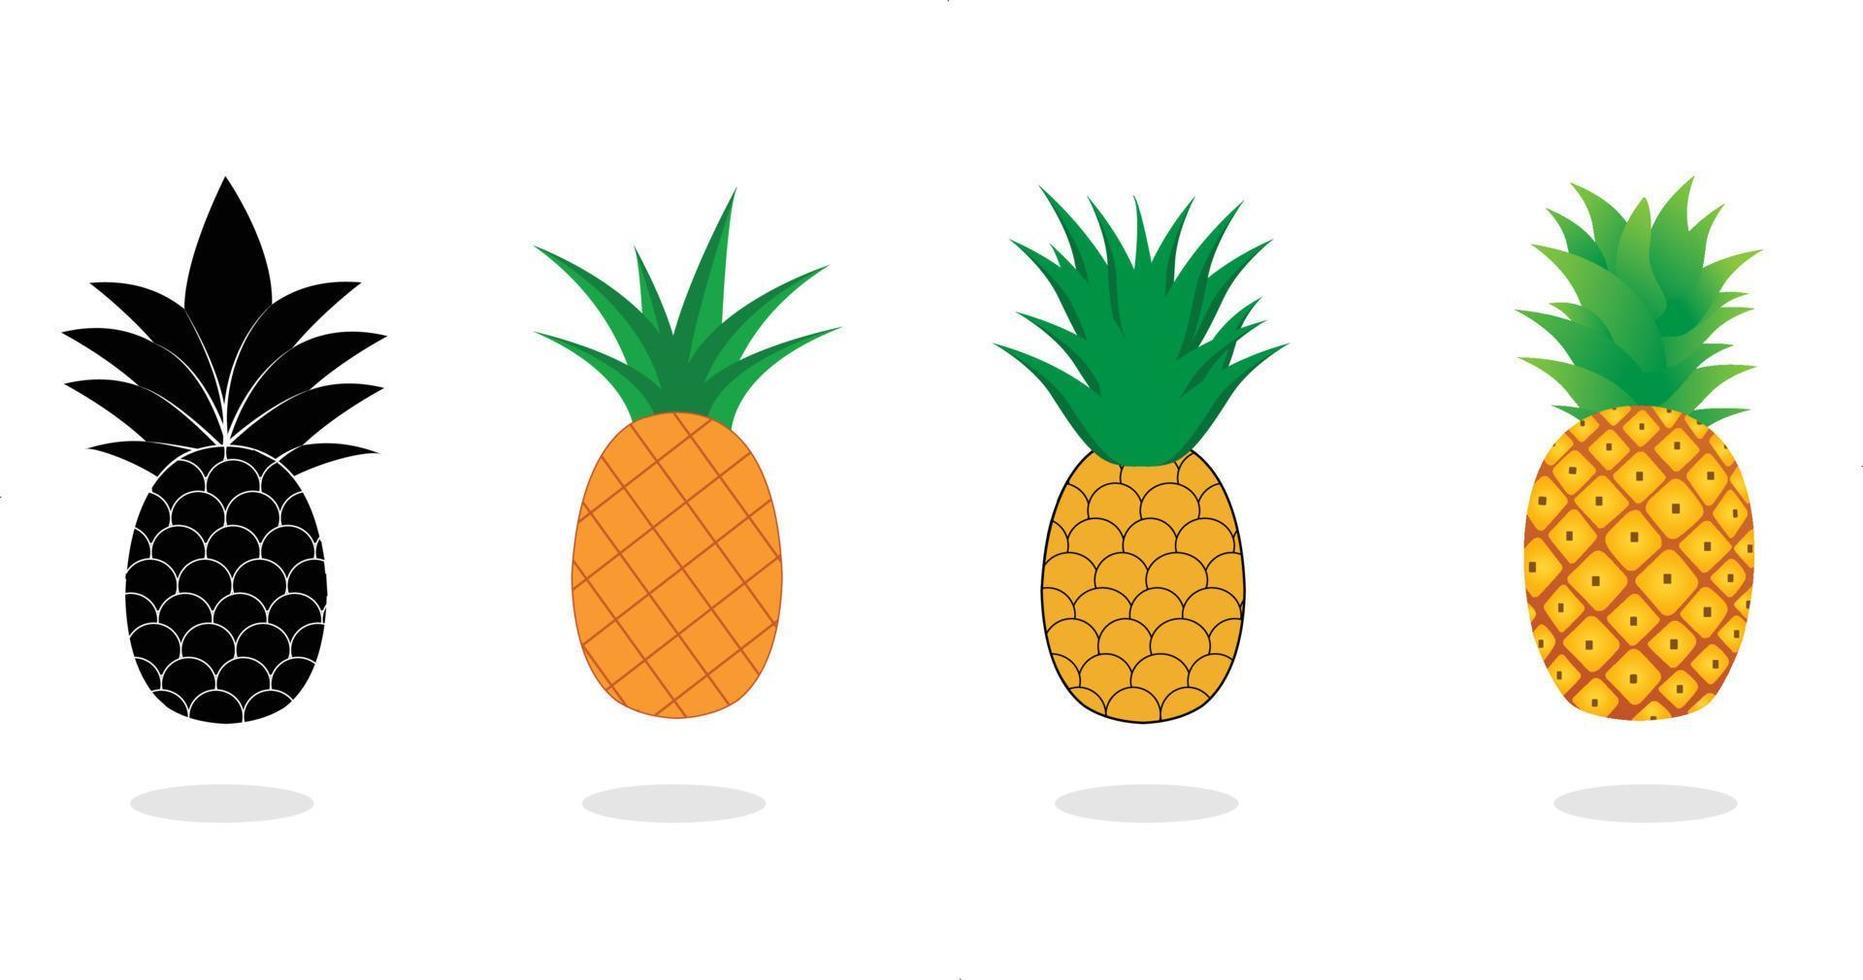 coleção de abacaxi. ilustração de frutas de abacaxi com estilo cartoon isolado no fundo branco. frutas de verão, para uma vida saudável e natural, ilustração vetorial. vetor